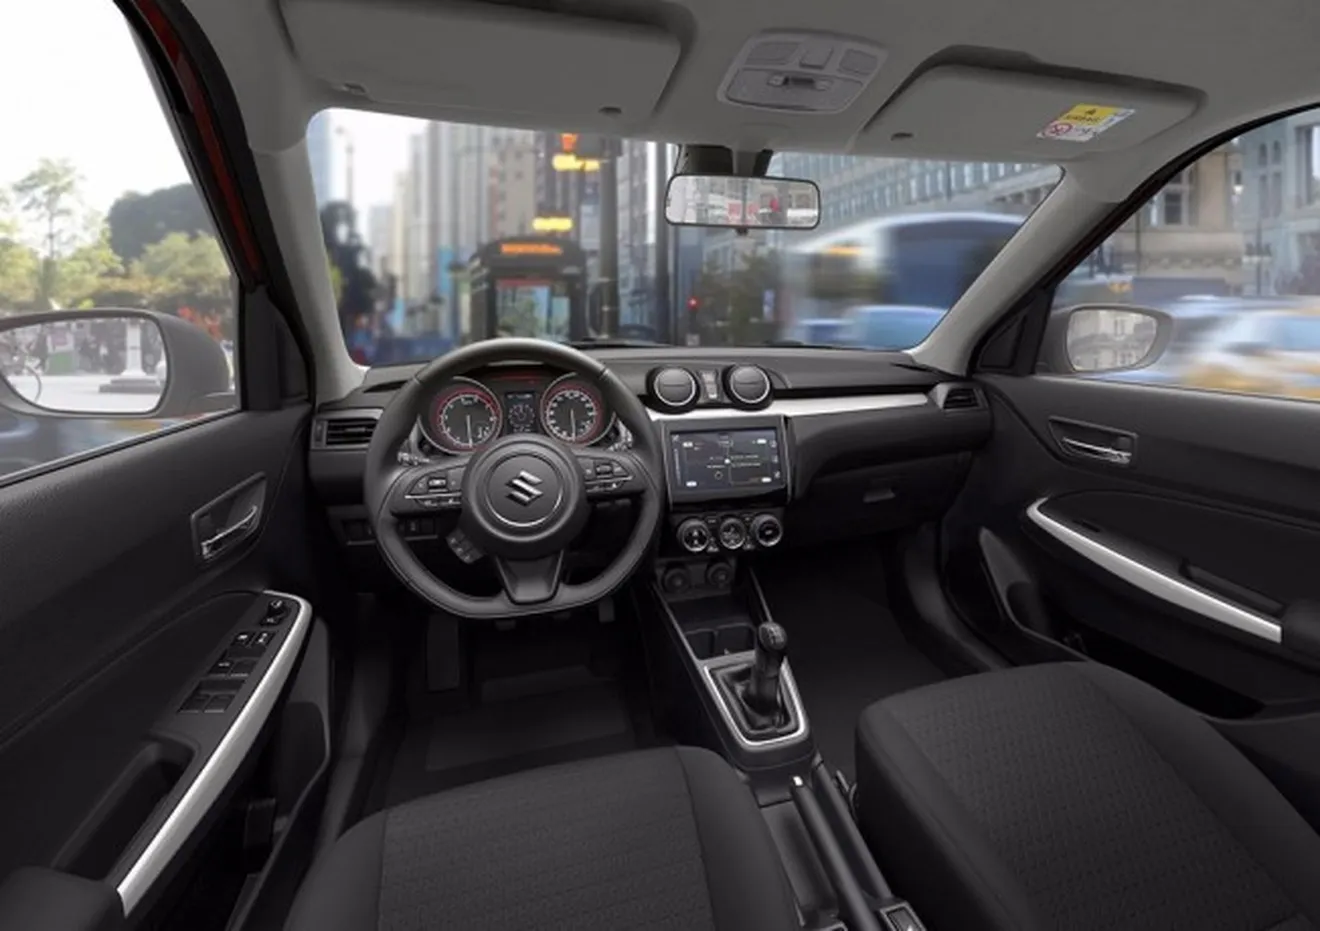 Suzuki Swift 2017 - interior